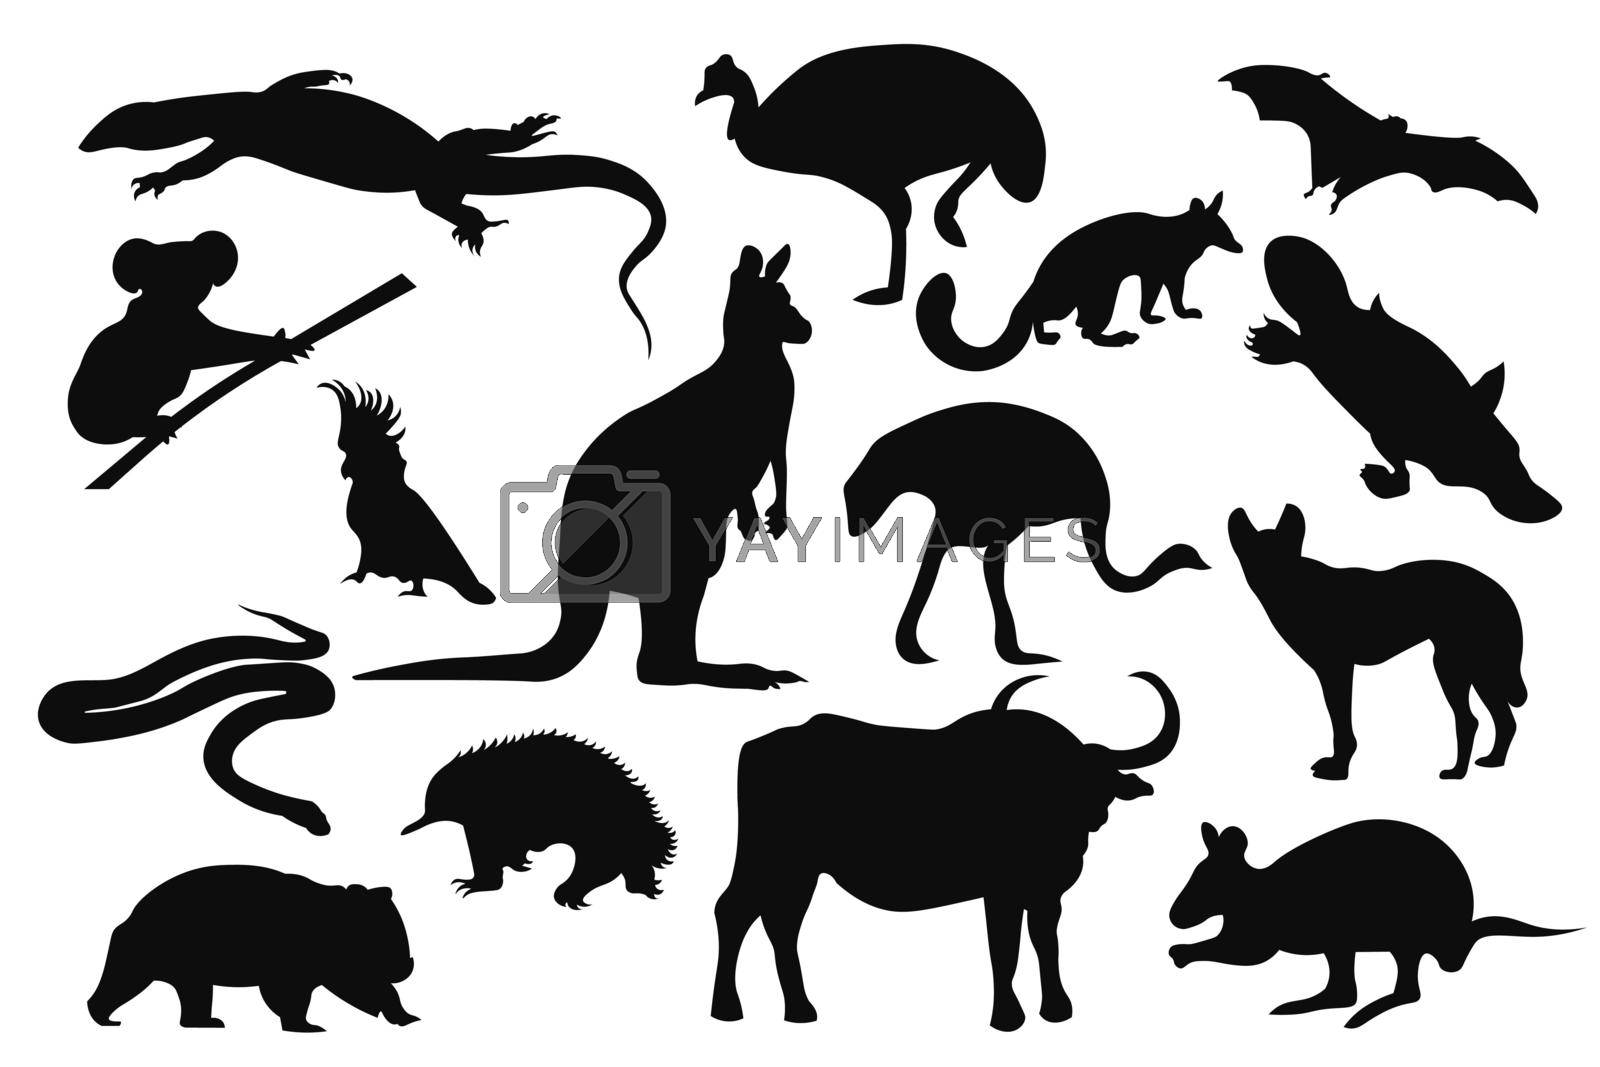 Australian animals silhouettes set. Vector illustration.